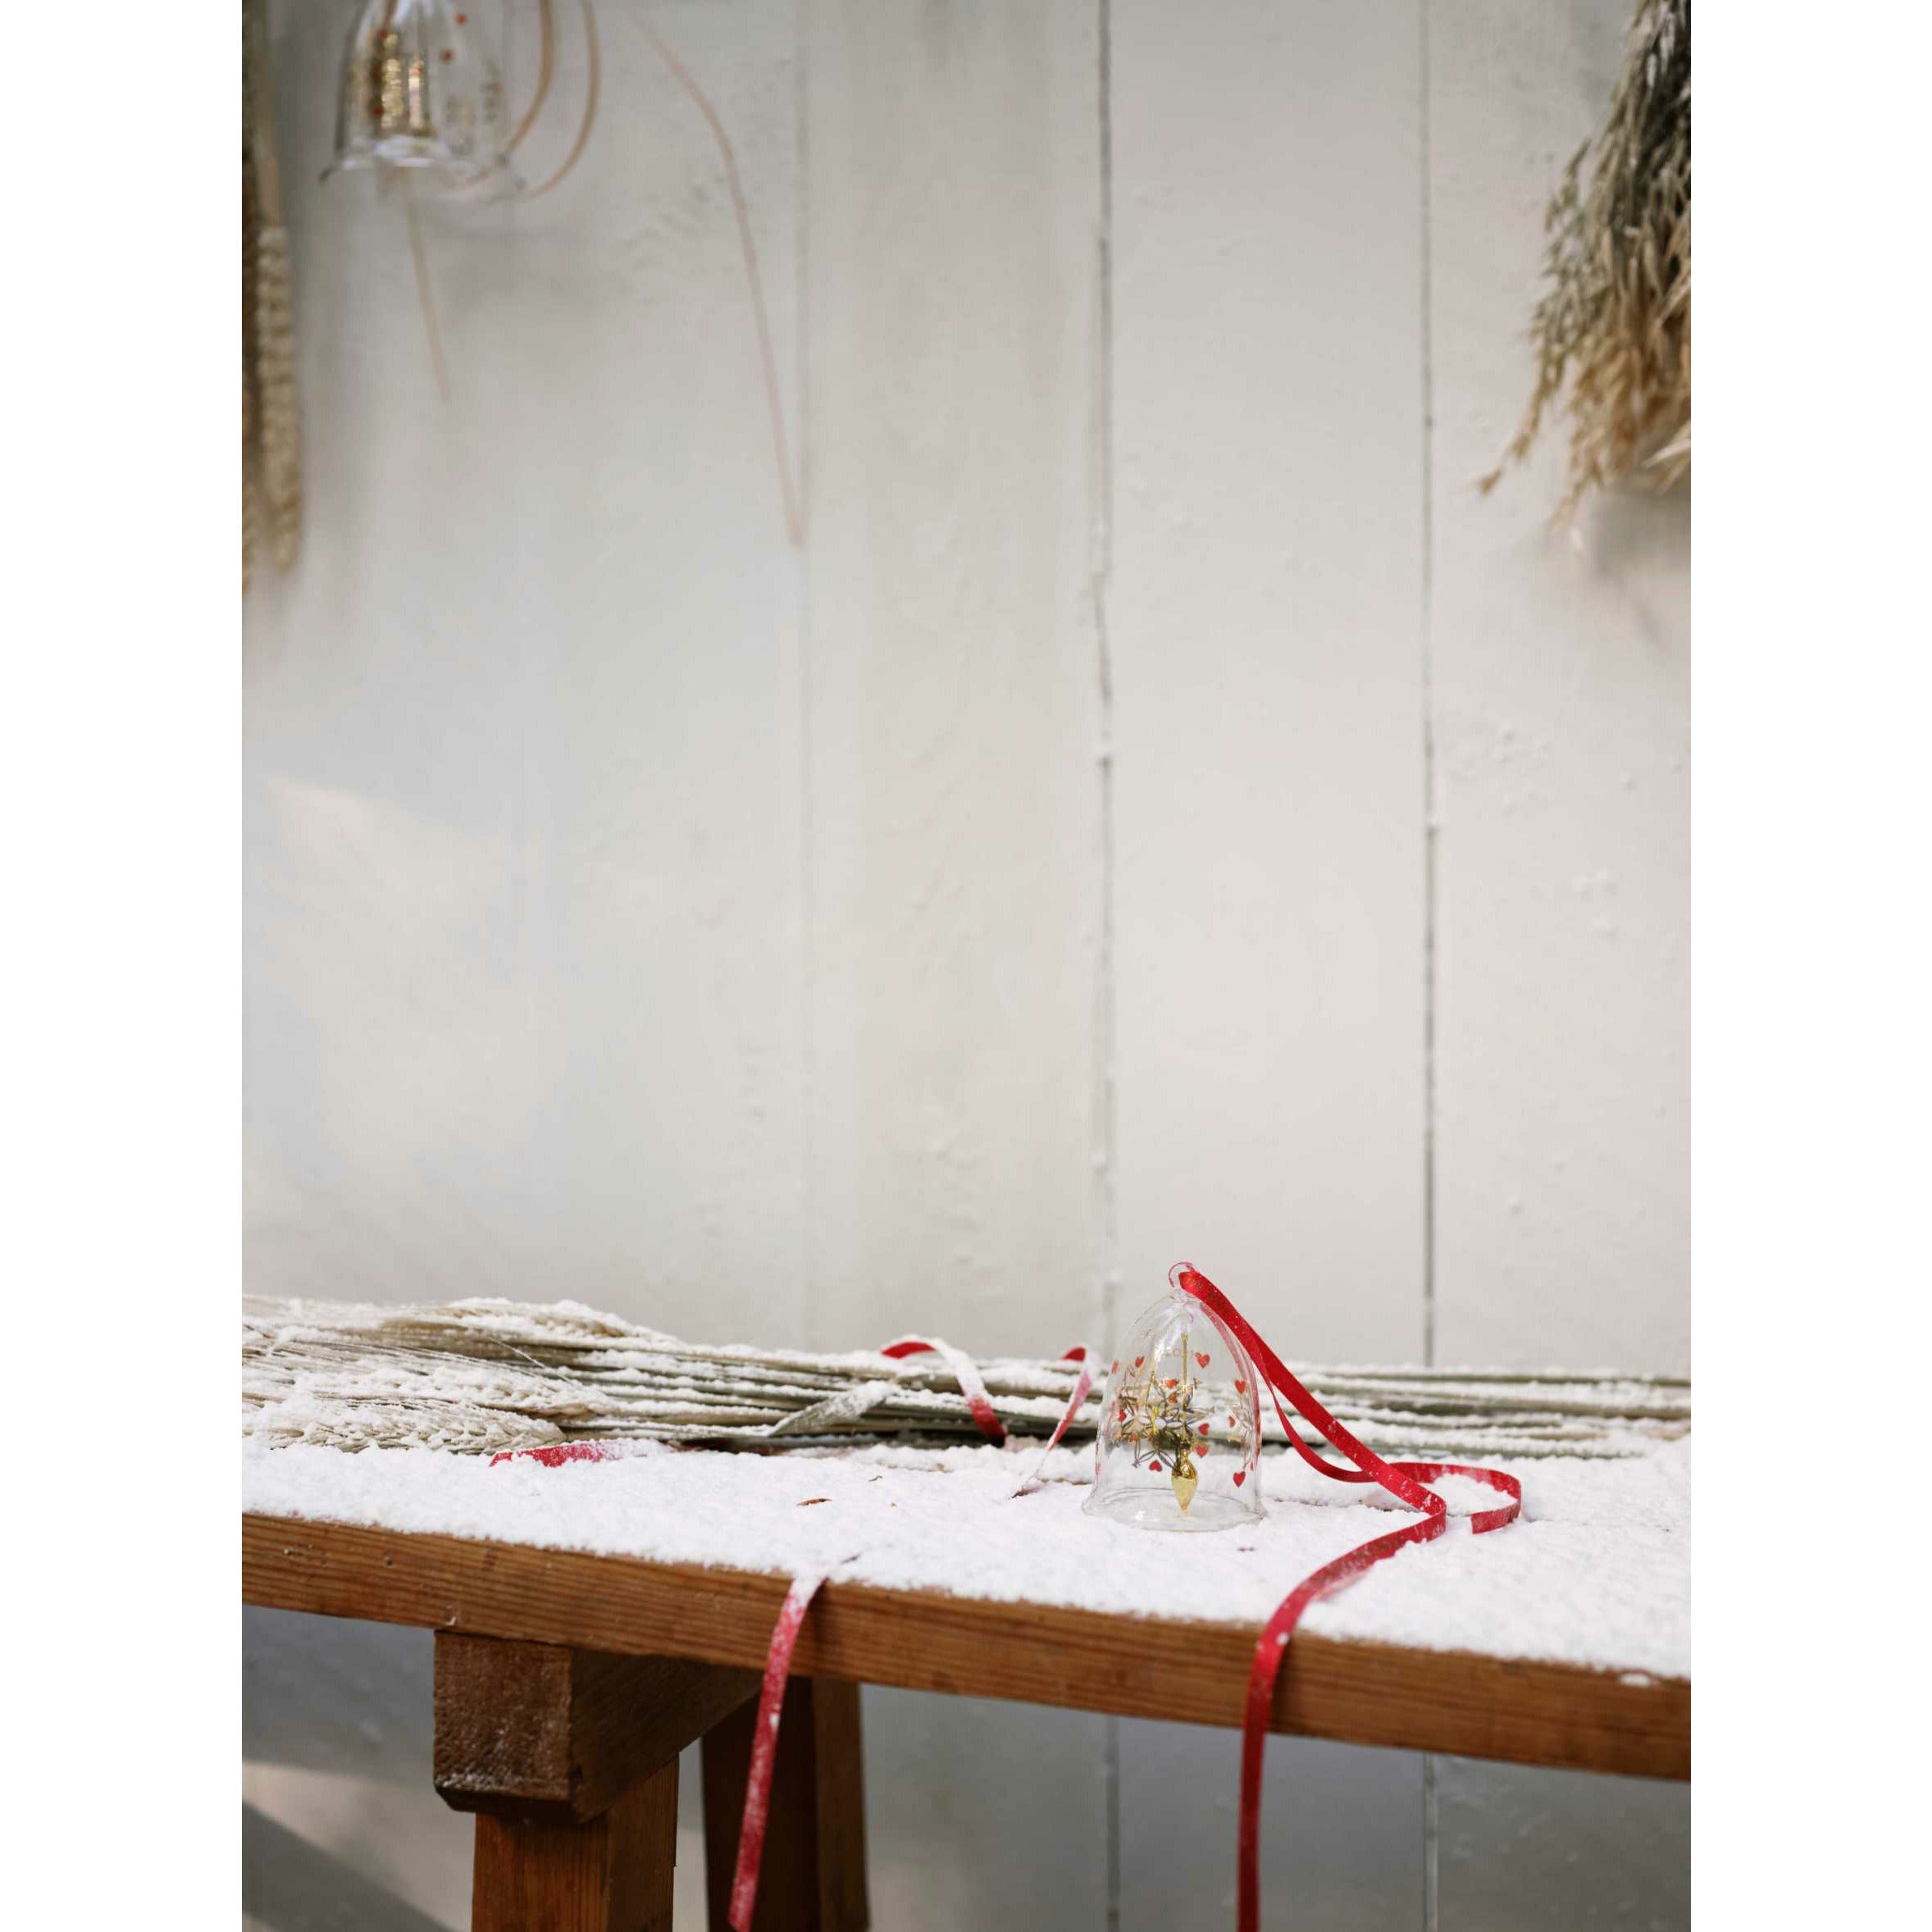 Holmegaard Ann Sofi Romme Christmas Bell, groß